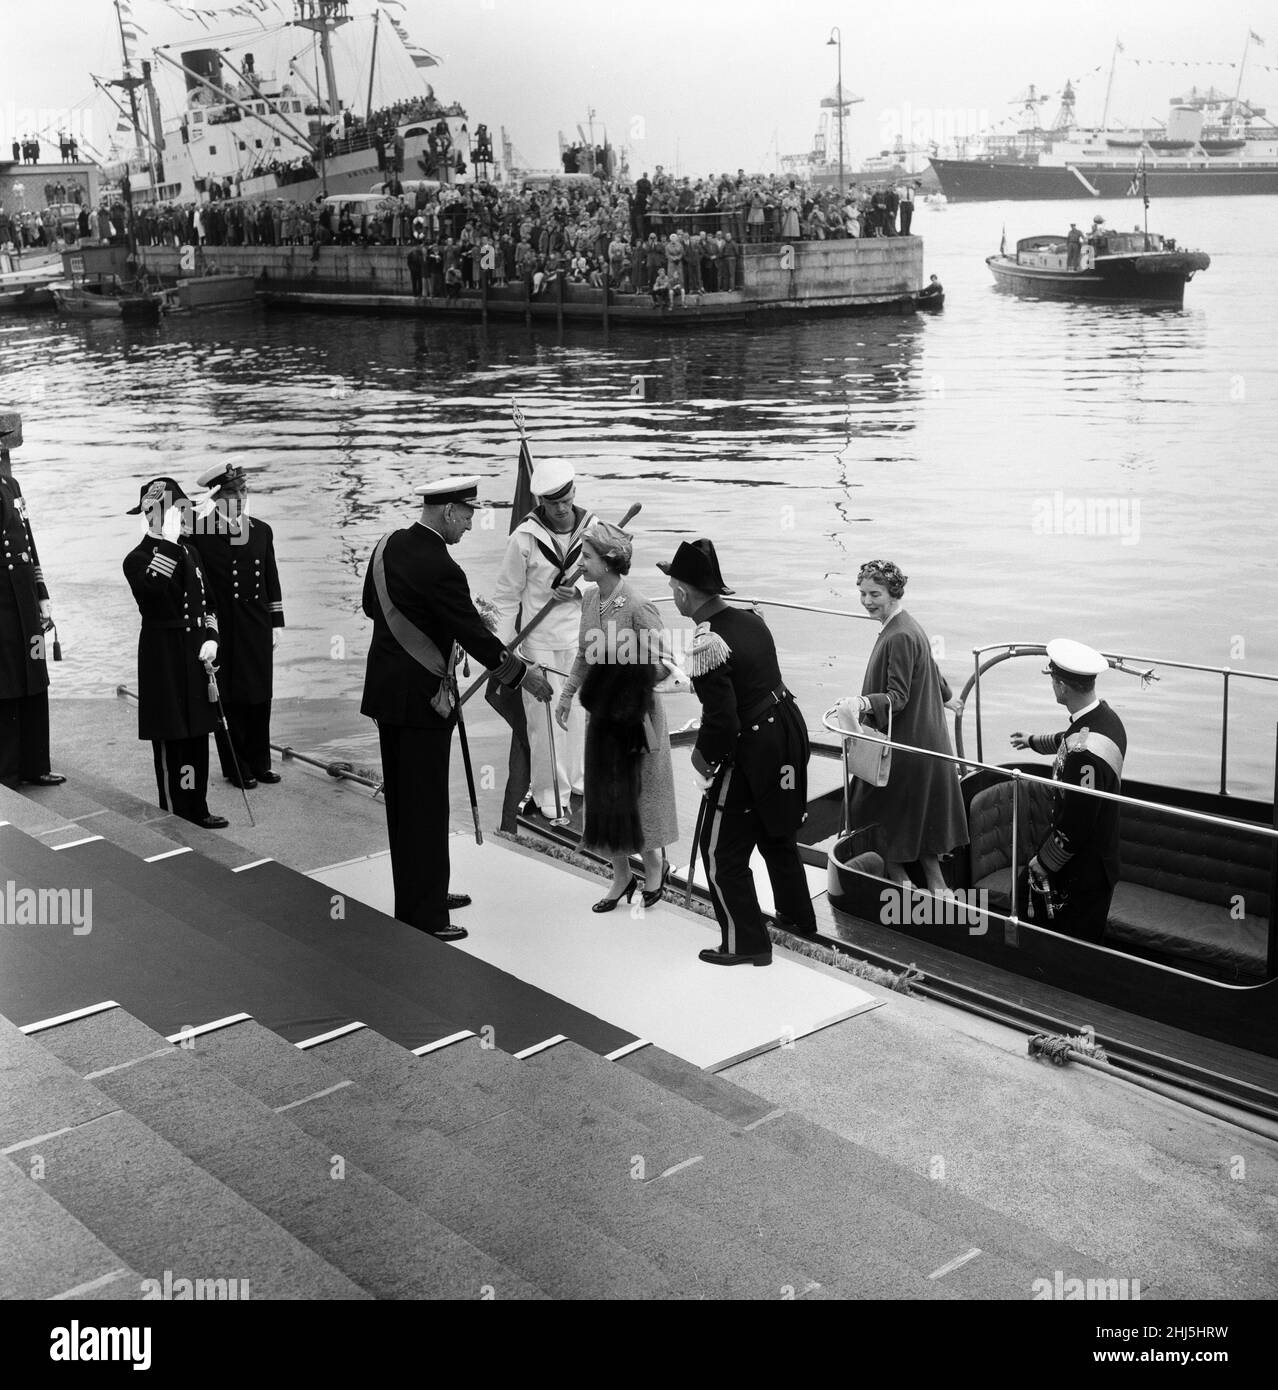 Königin Elizabeth II. Und Prinz Philip, Herzog von Edinburgh, besuchen Dänemark. Gastgeber waren König Frederik IX. Und Königin Ingrid von Dänemark. 21st Mai 1957. Stockfoto